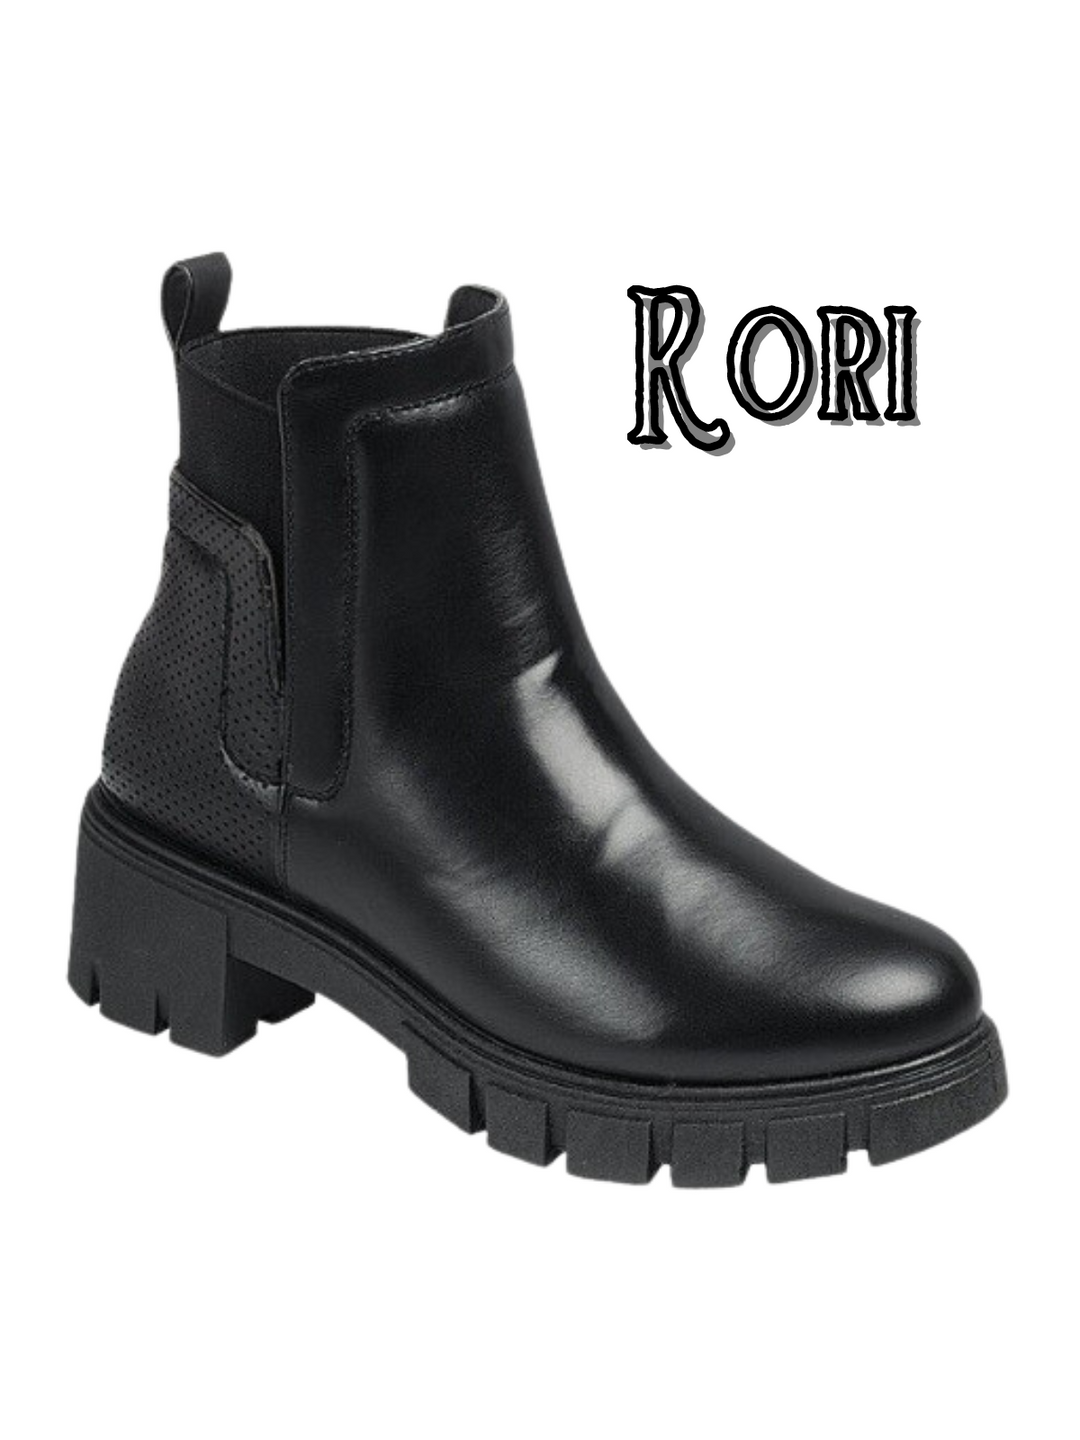 Rori Boots | Doorbuster